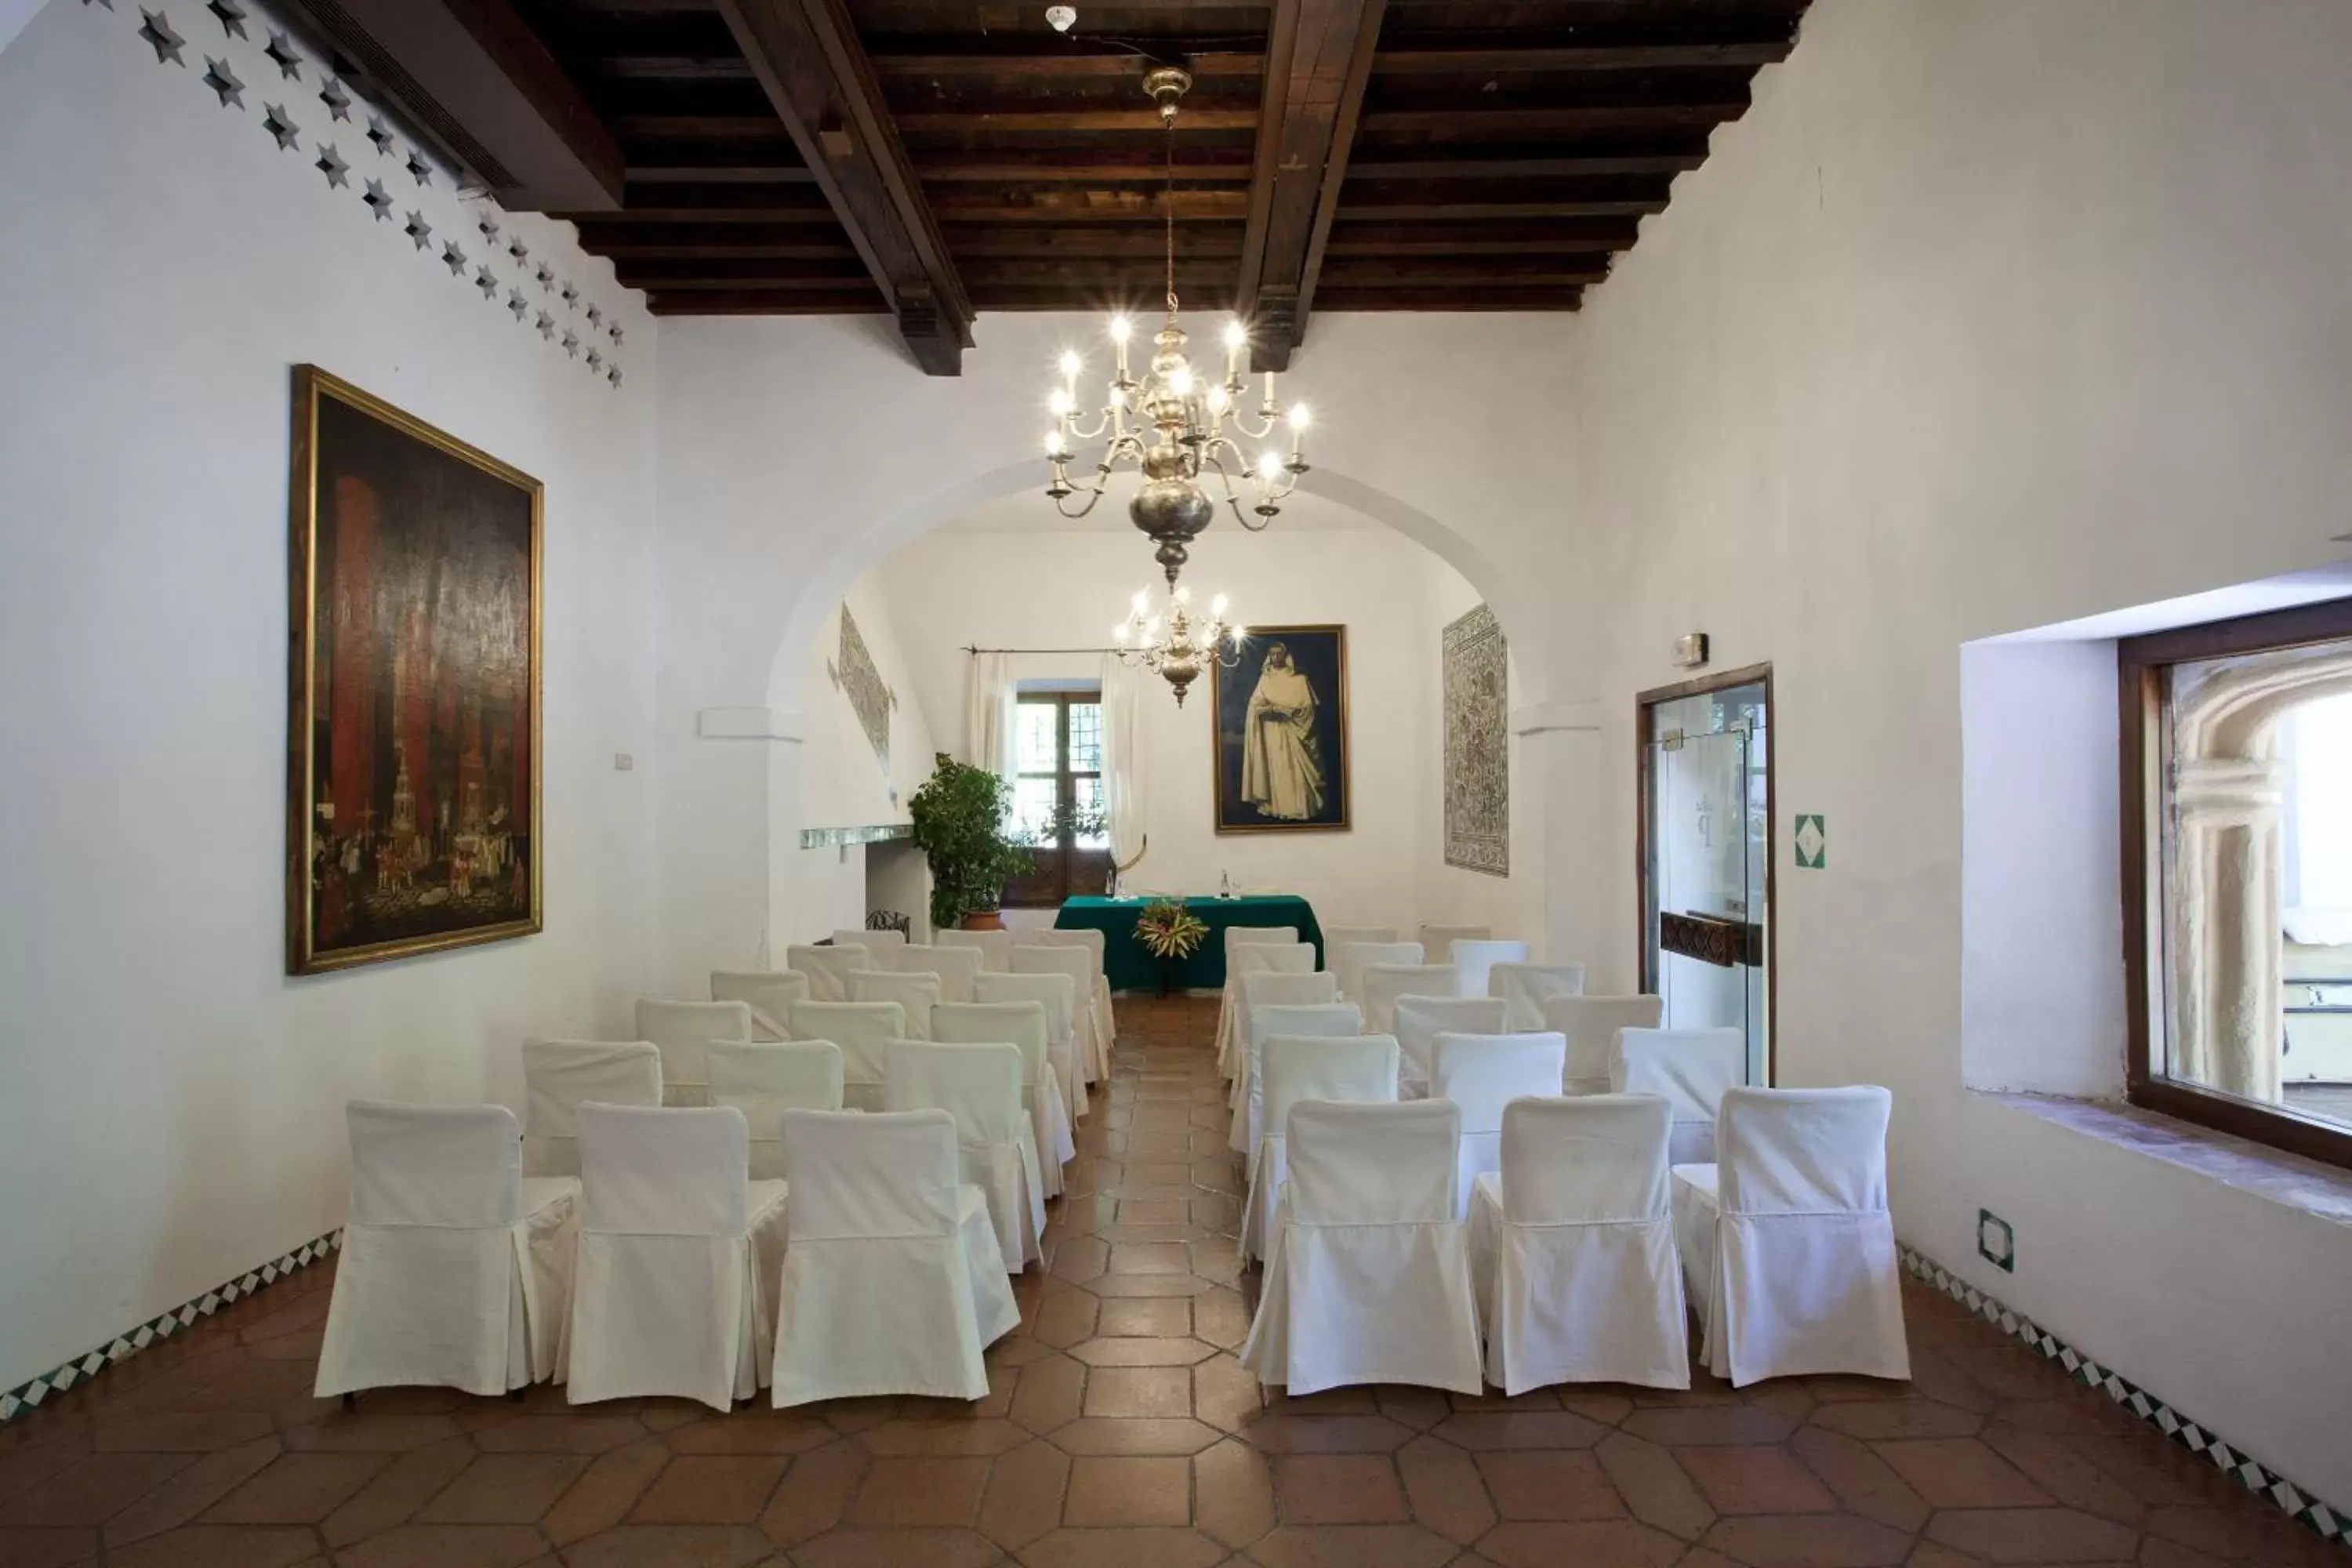 Business facilities, Banquet Facilities in Parador de Guadalupe